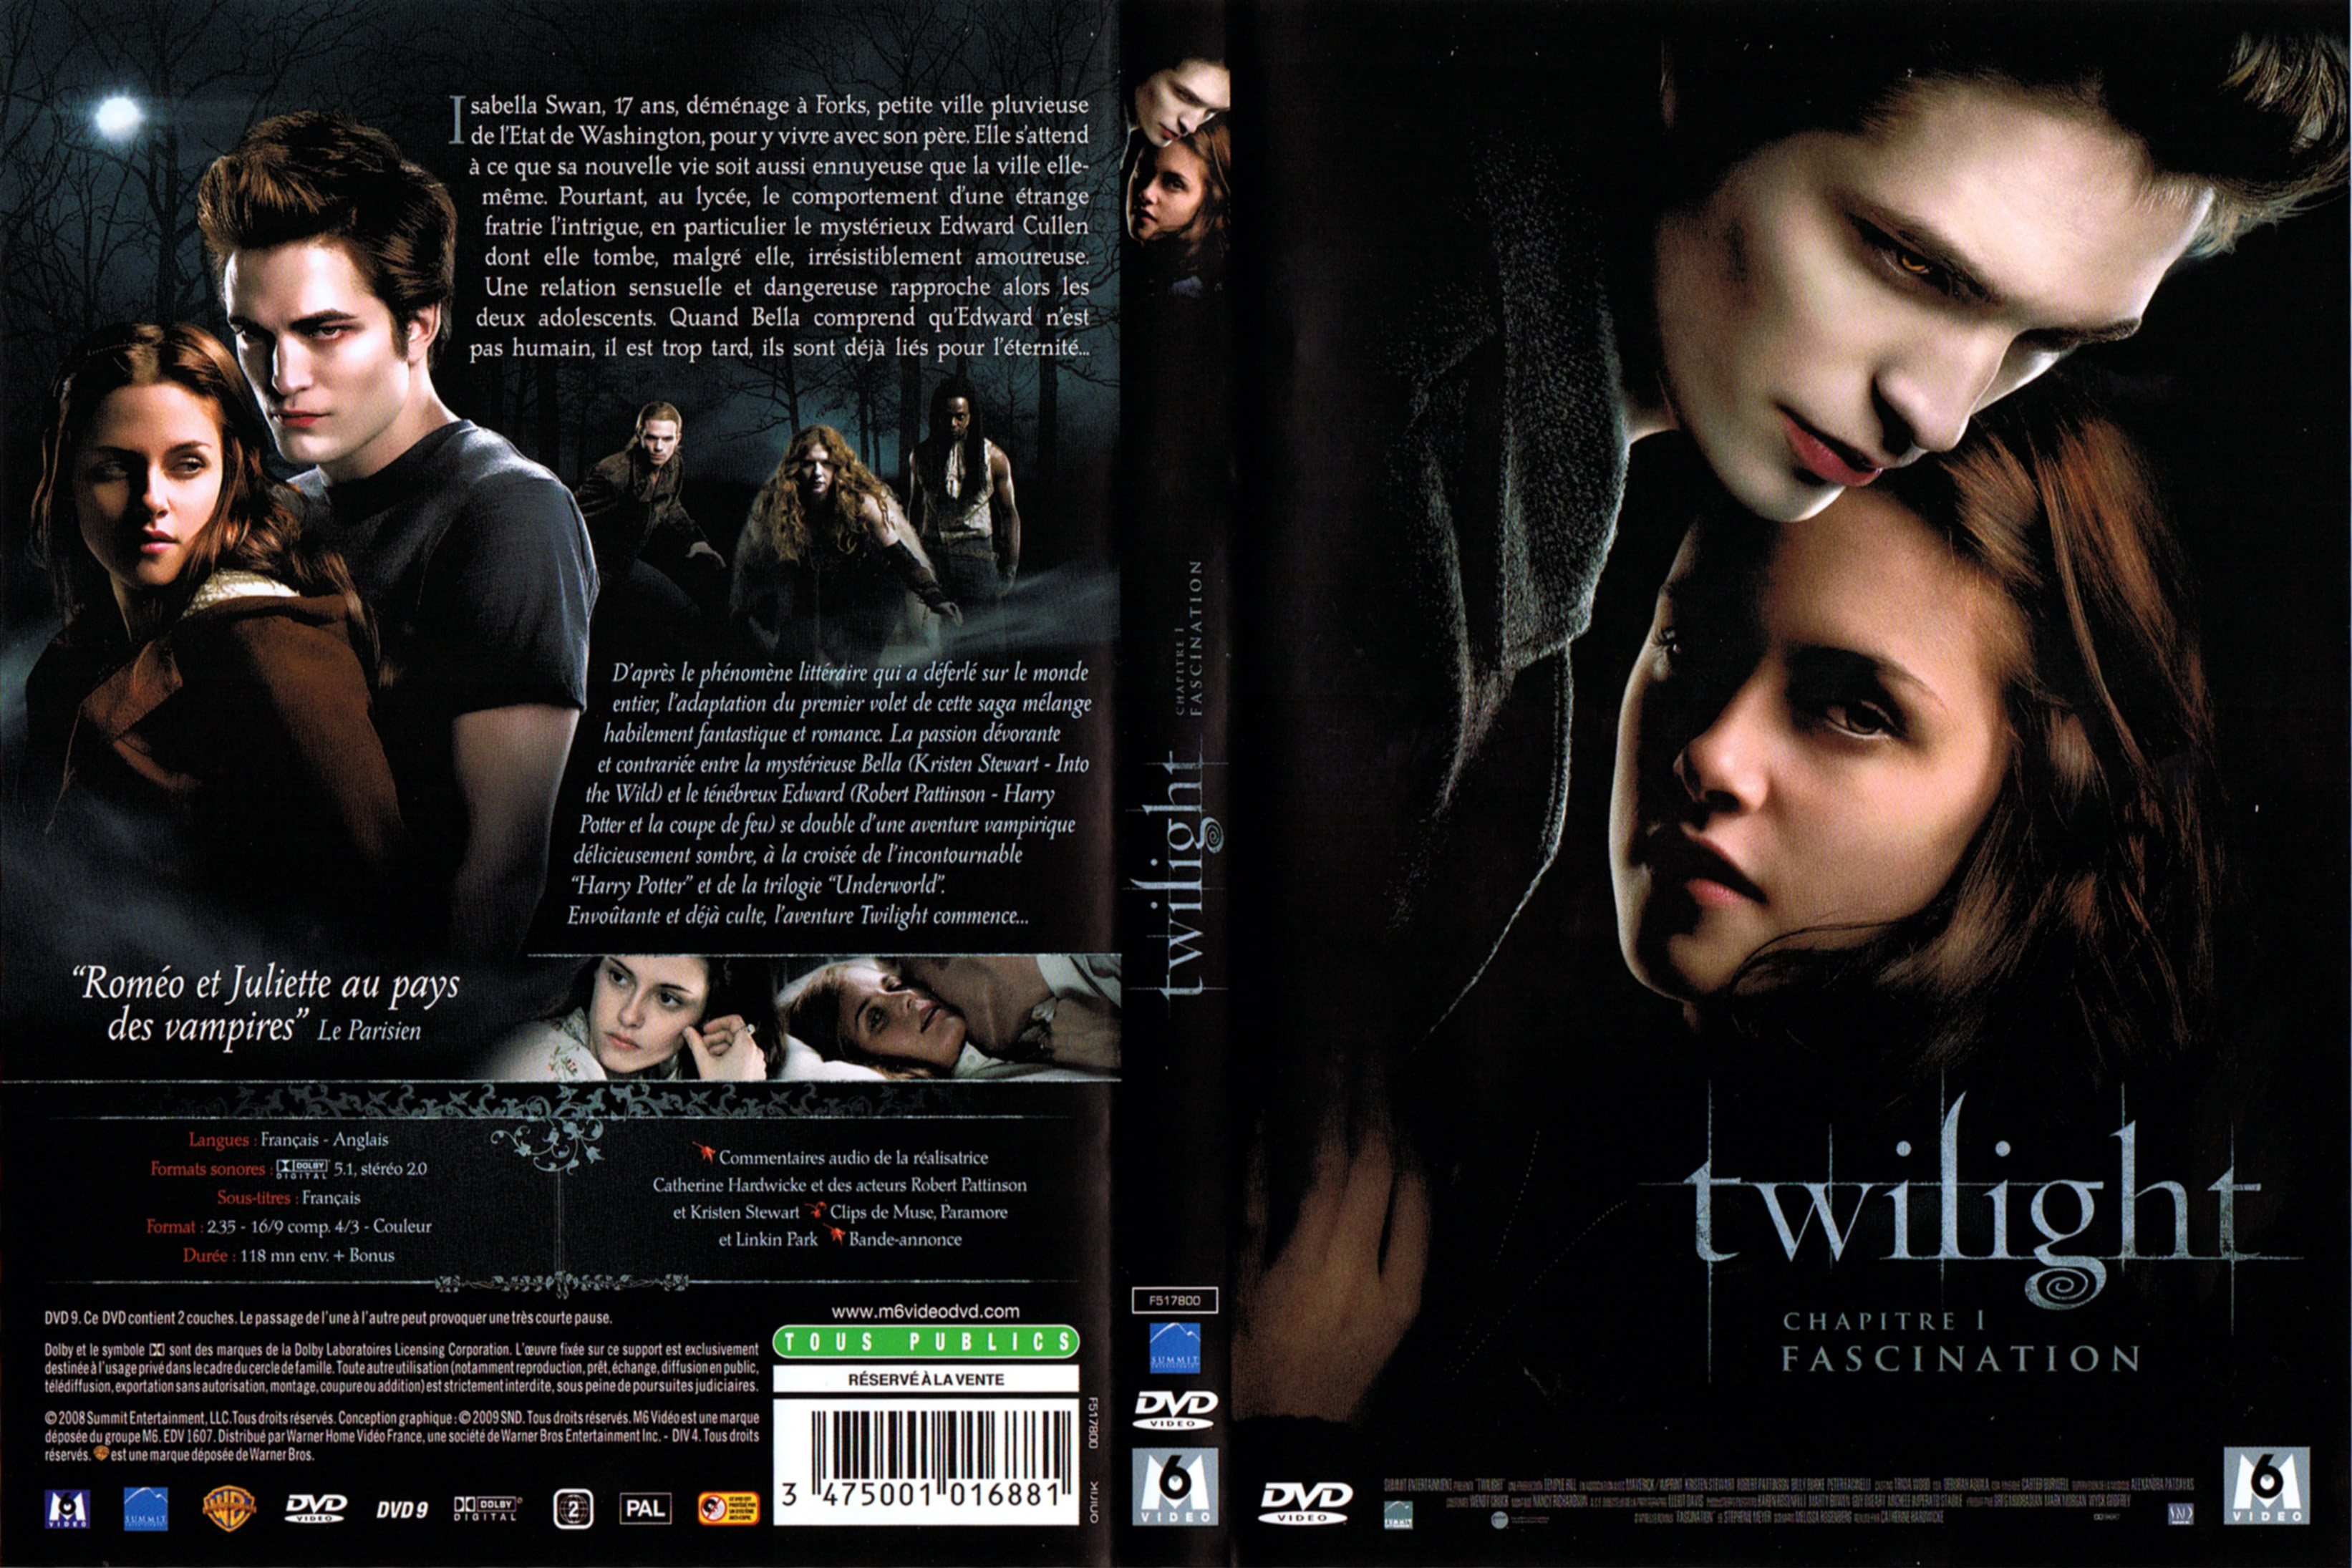 Jaquette DVD Twilight Chapitre 1 - Fascination